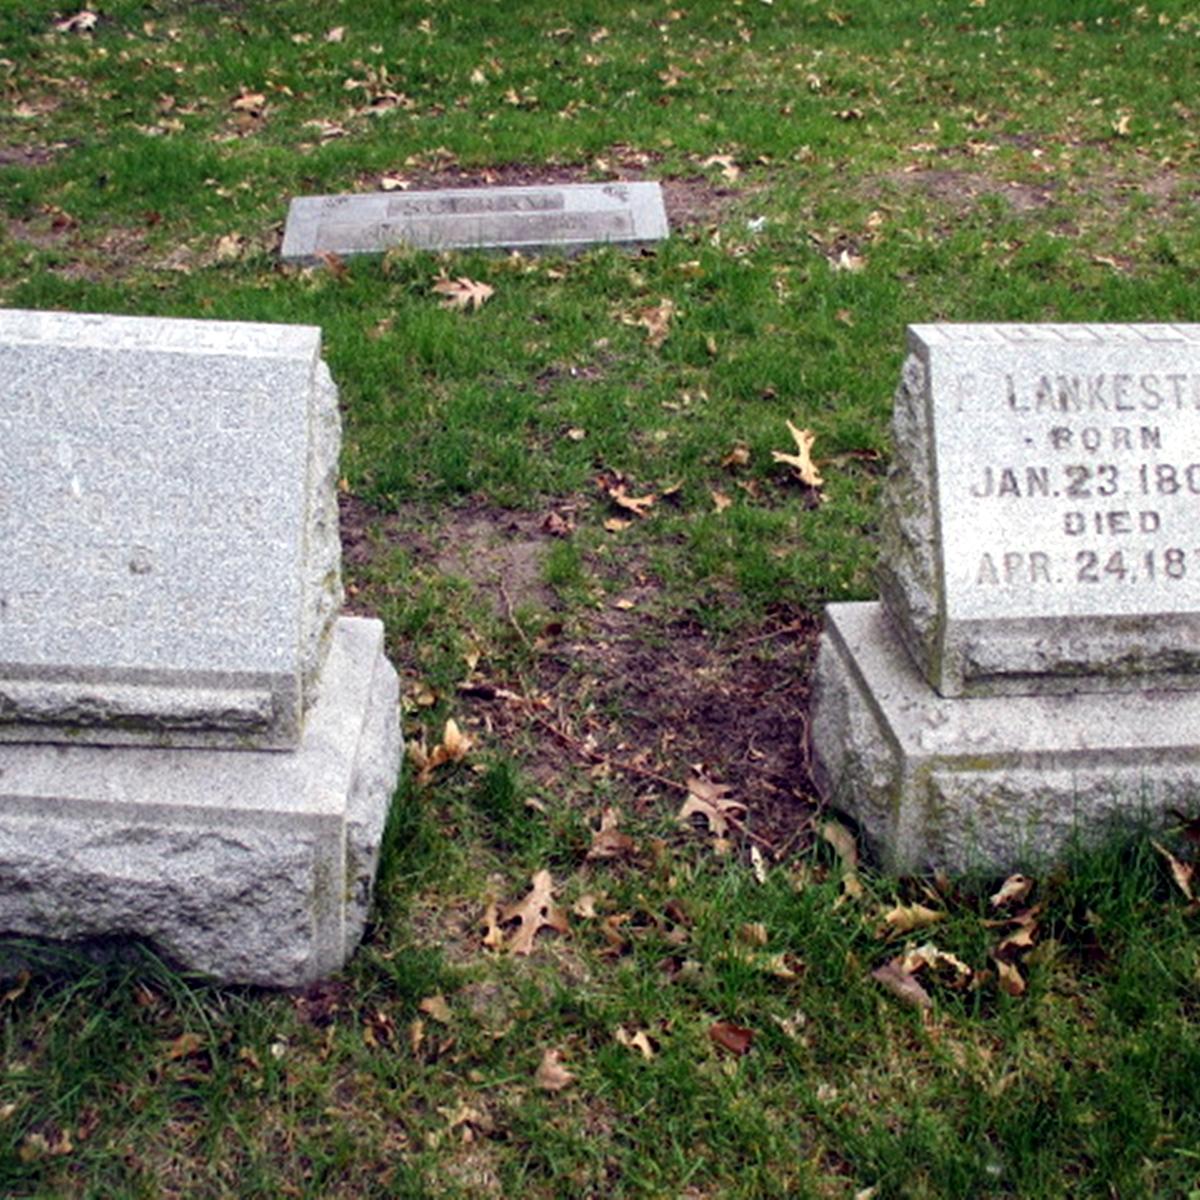 Graves of Pieter Lankester and Francina Goossen